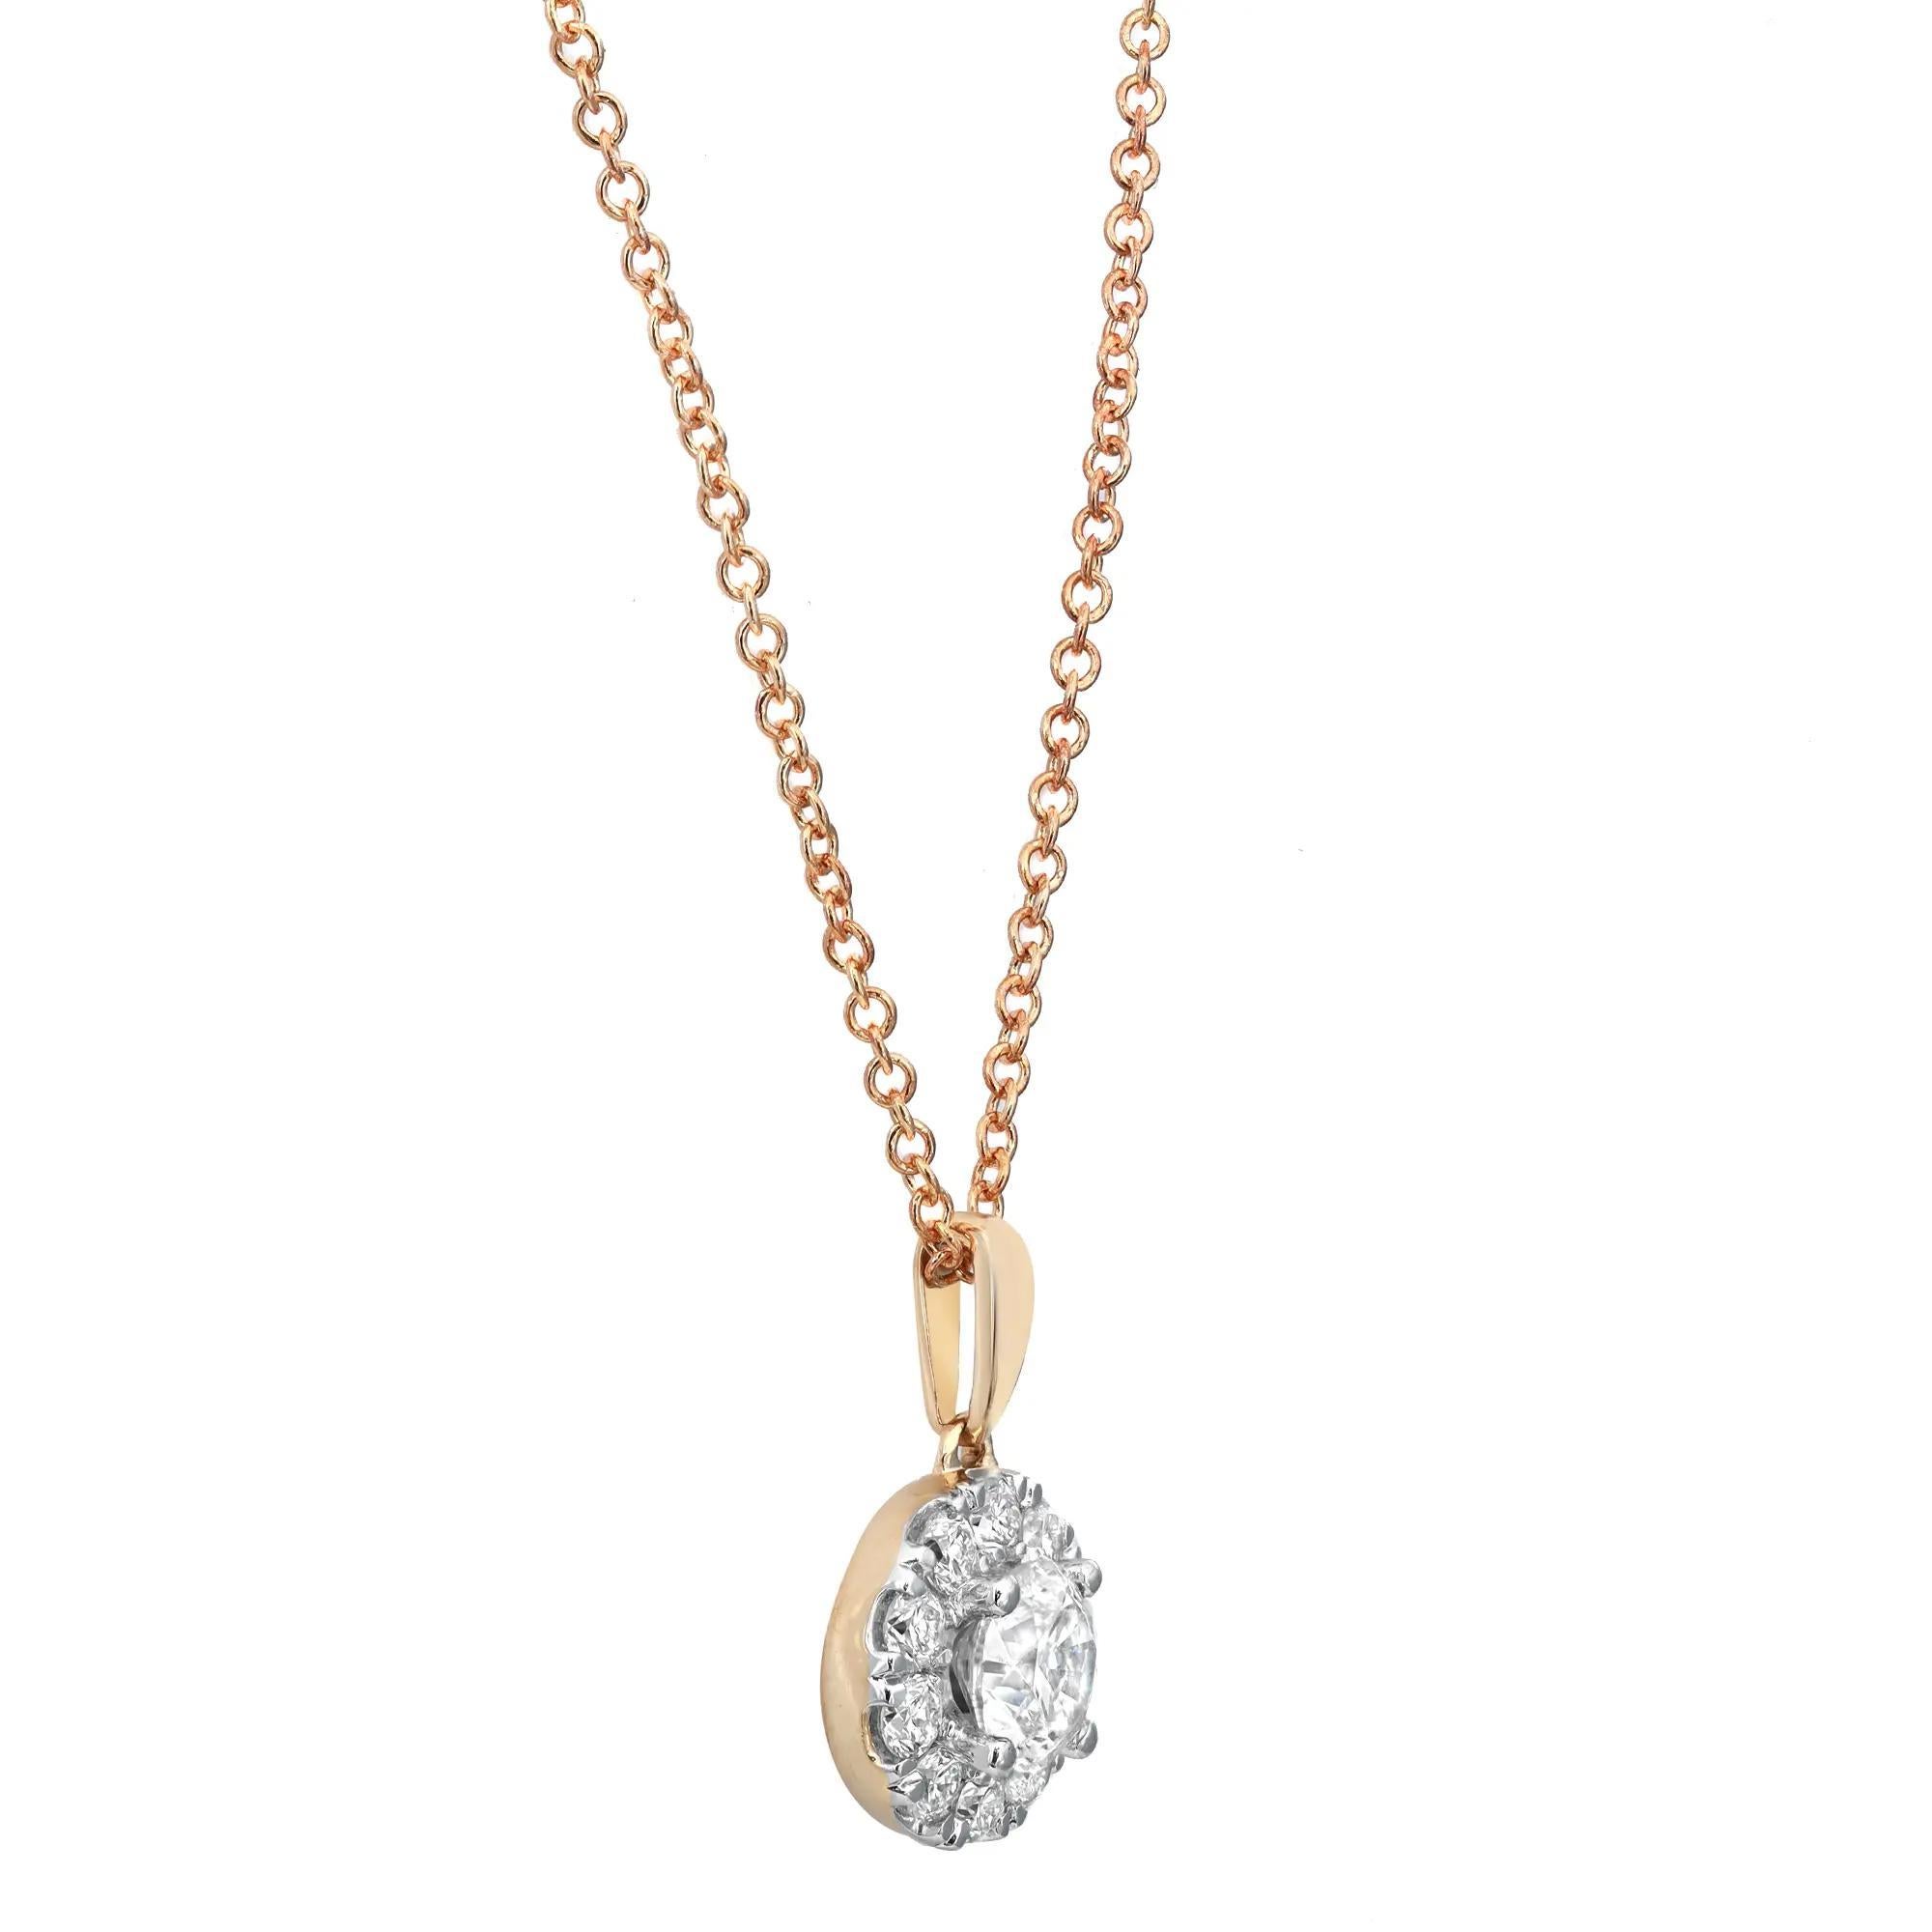 Ce magnifique collier pendentif en diamant est un must pour votre collection de bijoux. Fabriqué en or jaune 14 carats. Il comporte un diamant central serti clos pesant 0,50 carat, de minuscules diamants en halo donnant l'illusion d'une pierre plus